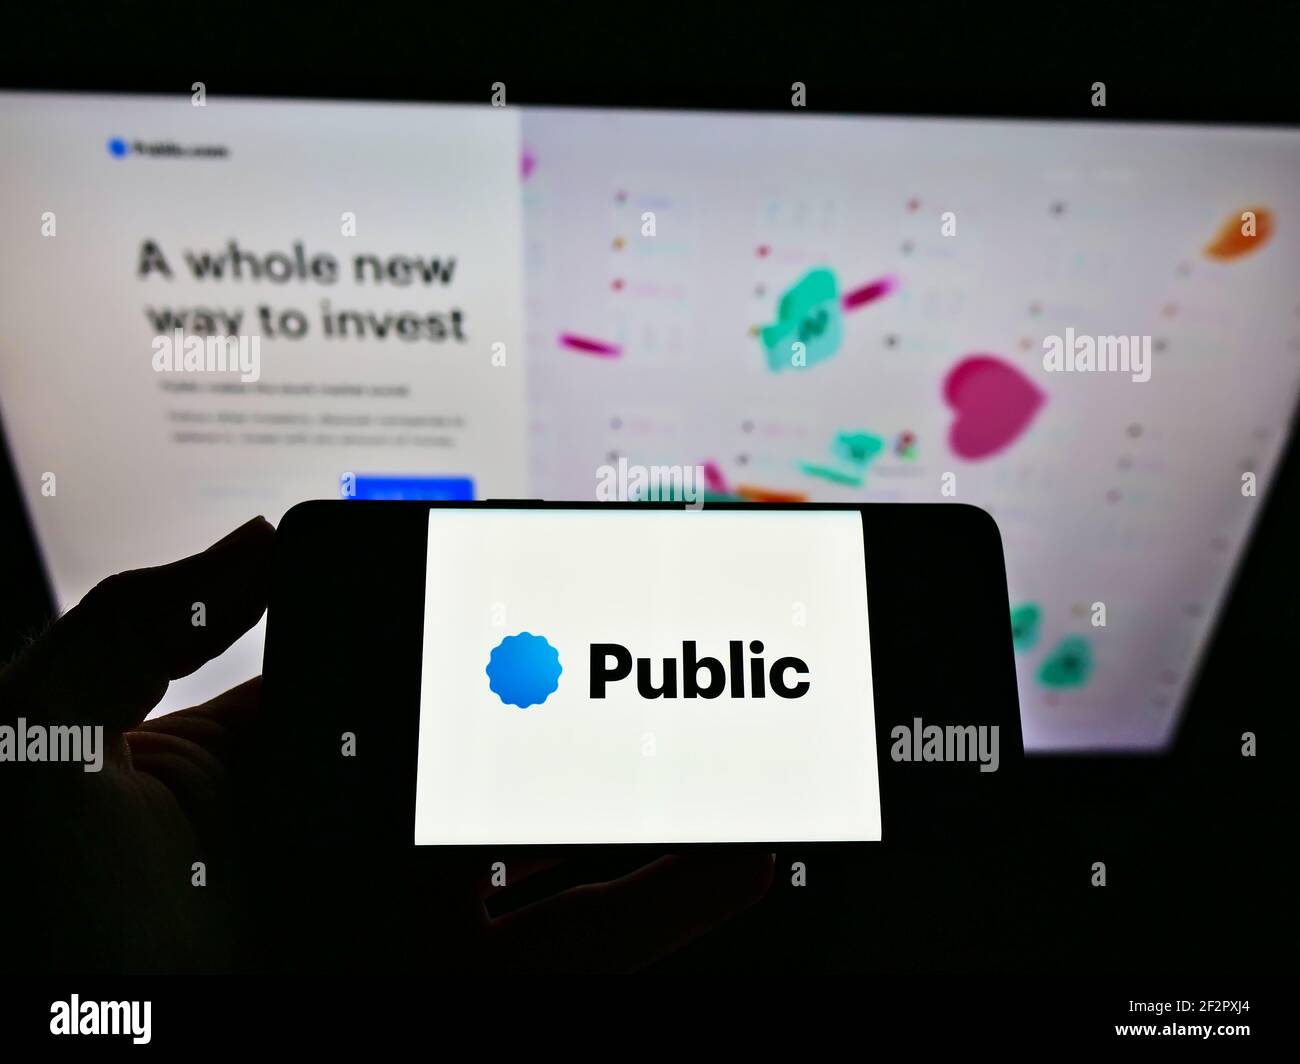 Persona che tiene il cellulare con il logo della piattaforma di investimento Public.com (Public Holdings Inc.) sullo schermo davanti alla pagina web. Mettere a fuoco il display del telefono. Foto Stock